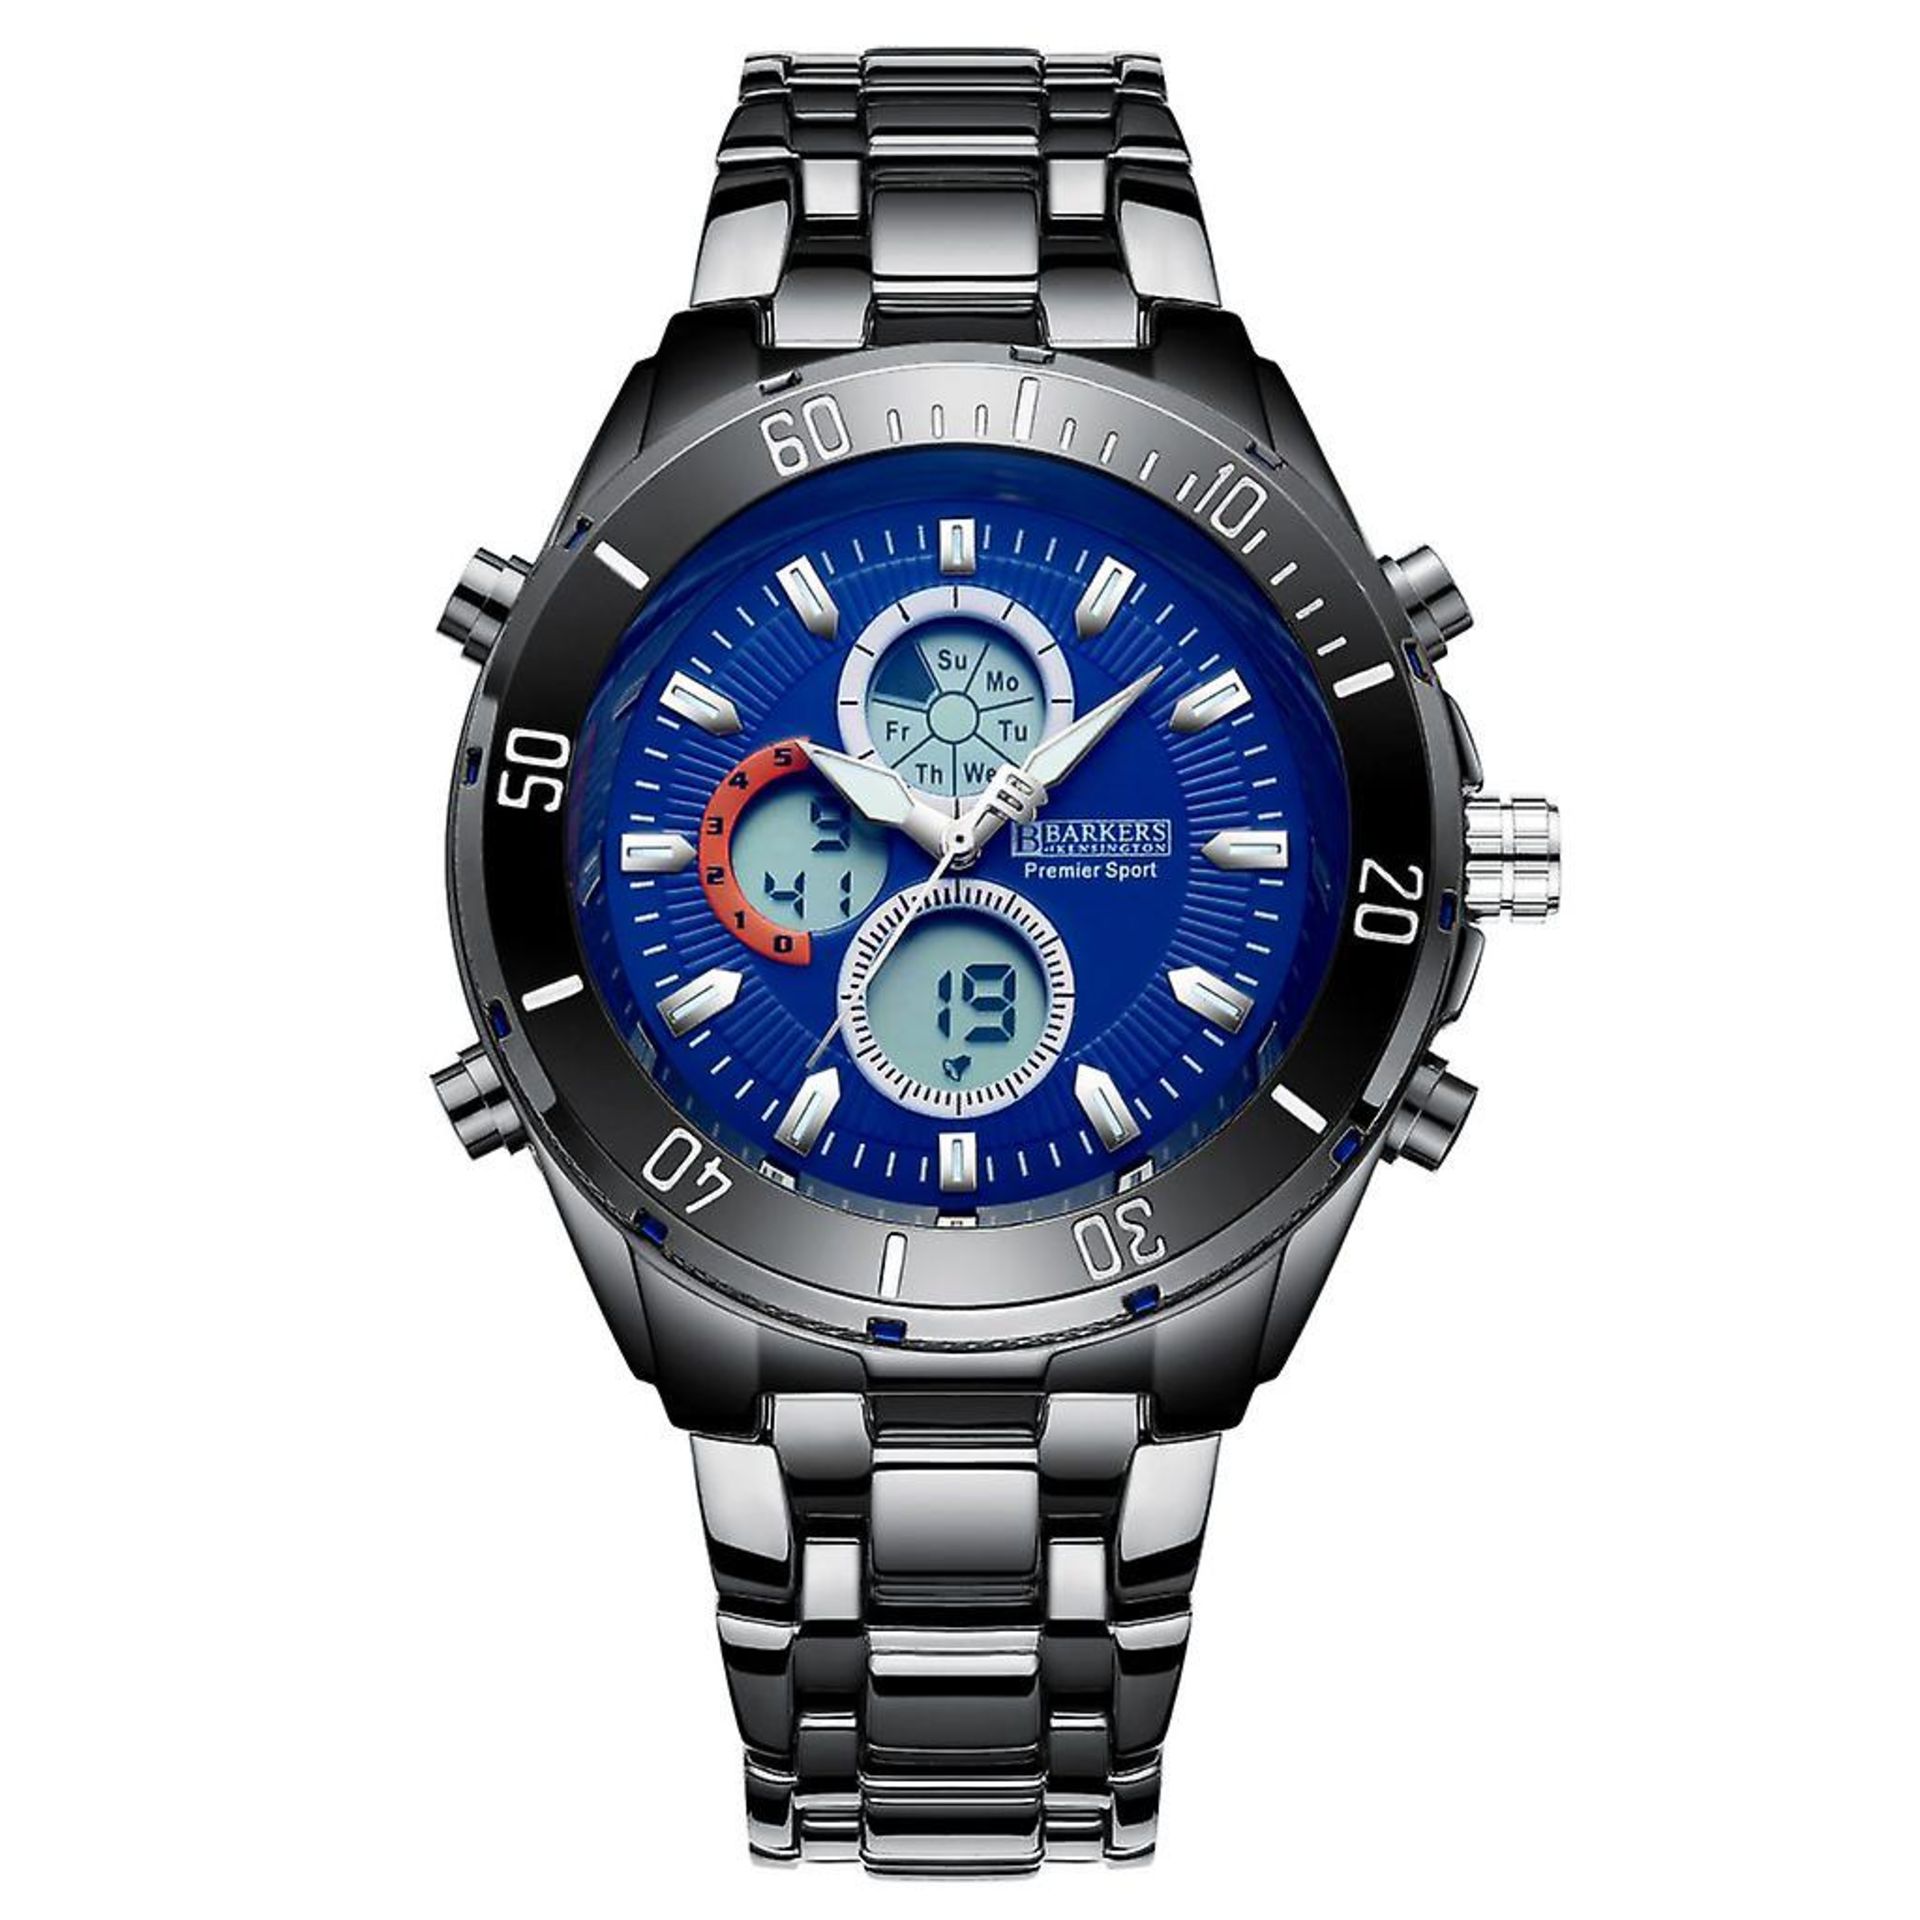 V Brand New Gents Barkers Of Kensington Blue Face Black Bracelet Strap Premier Sport Watch ISP £